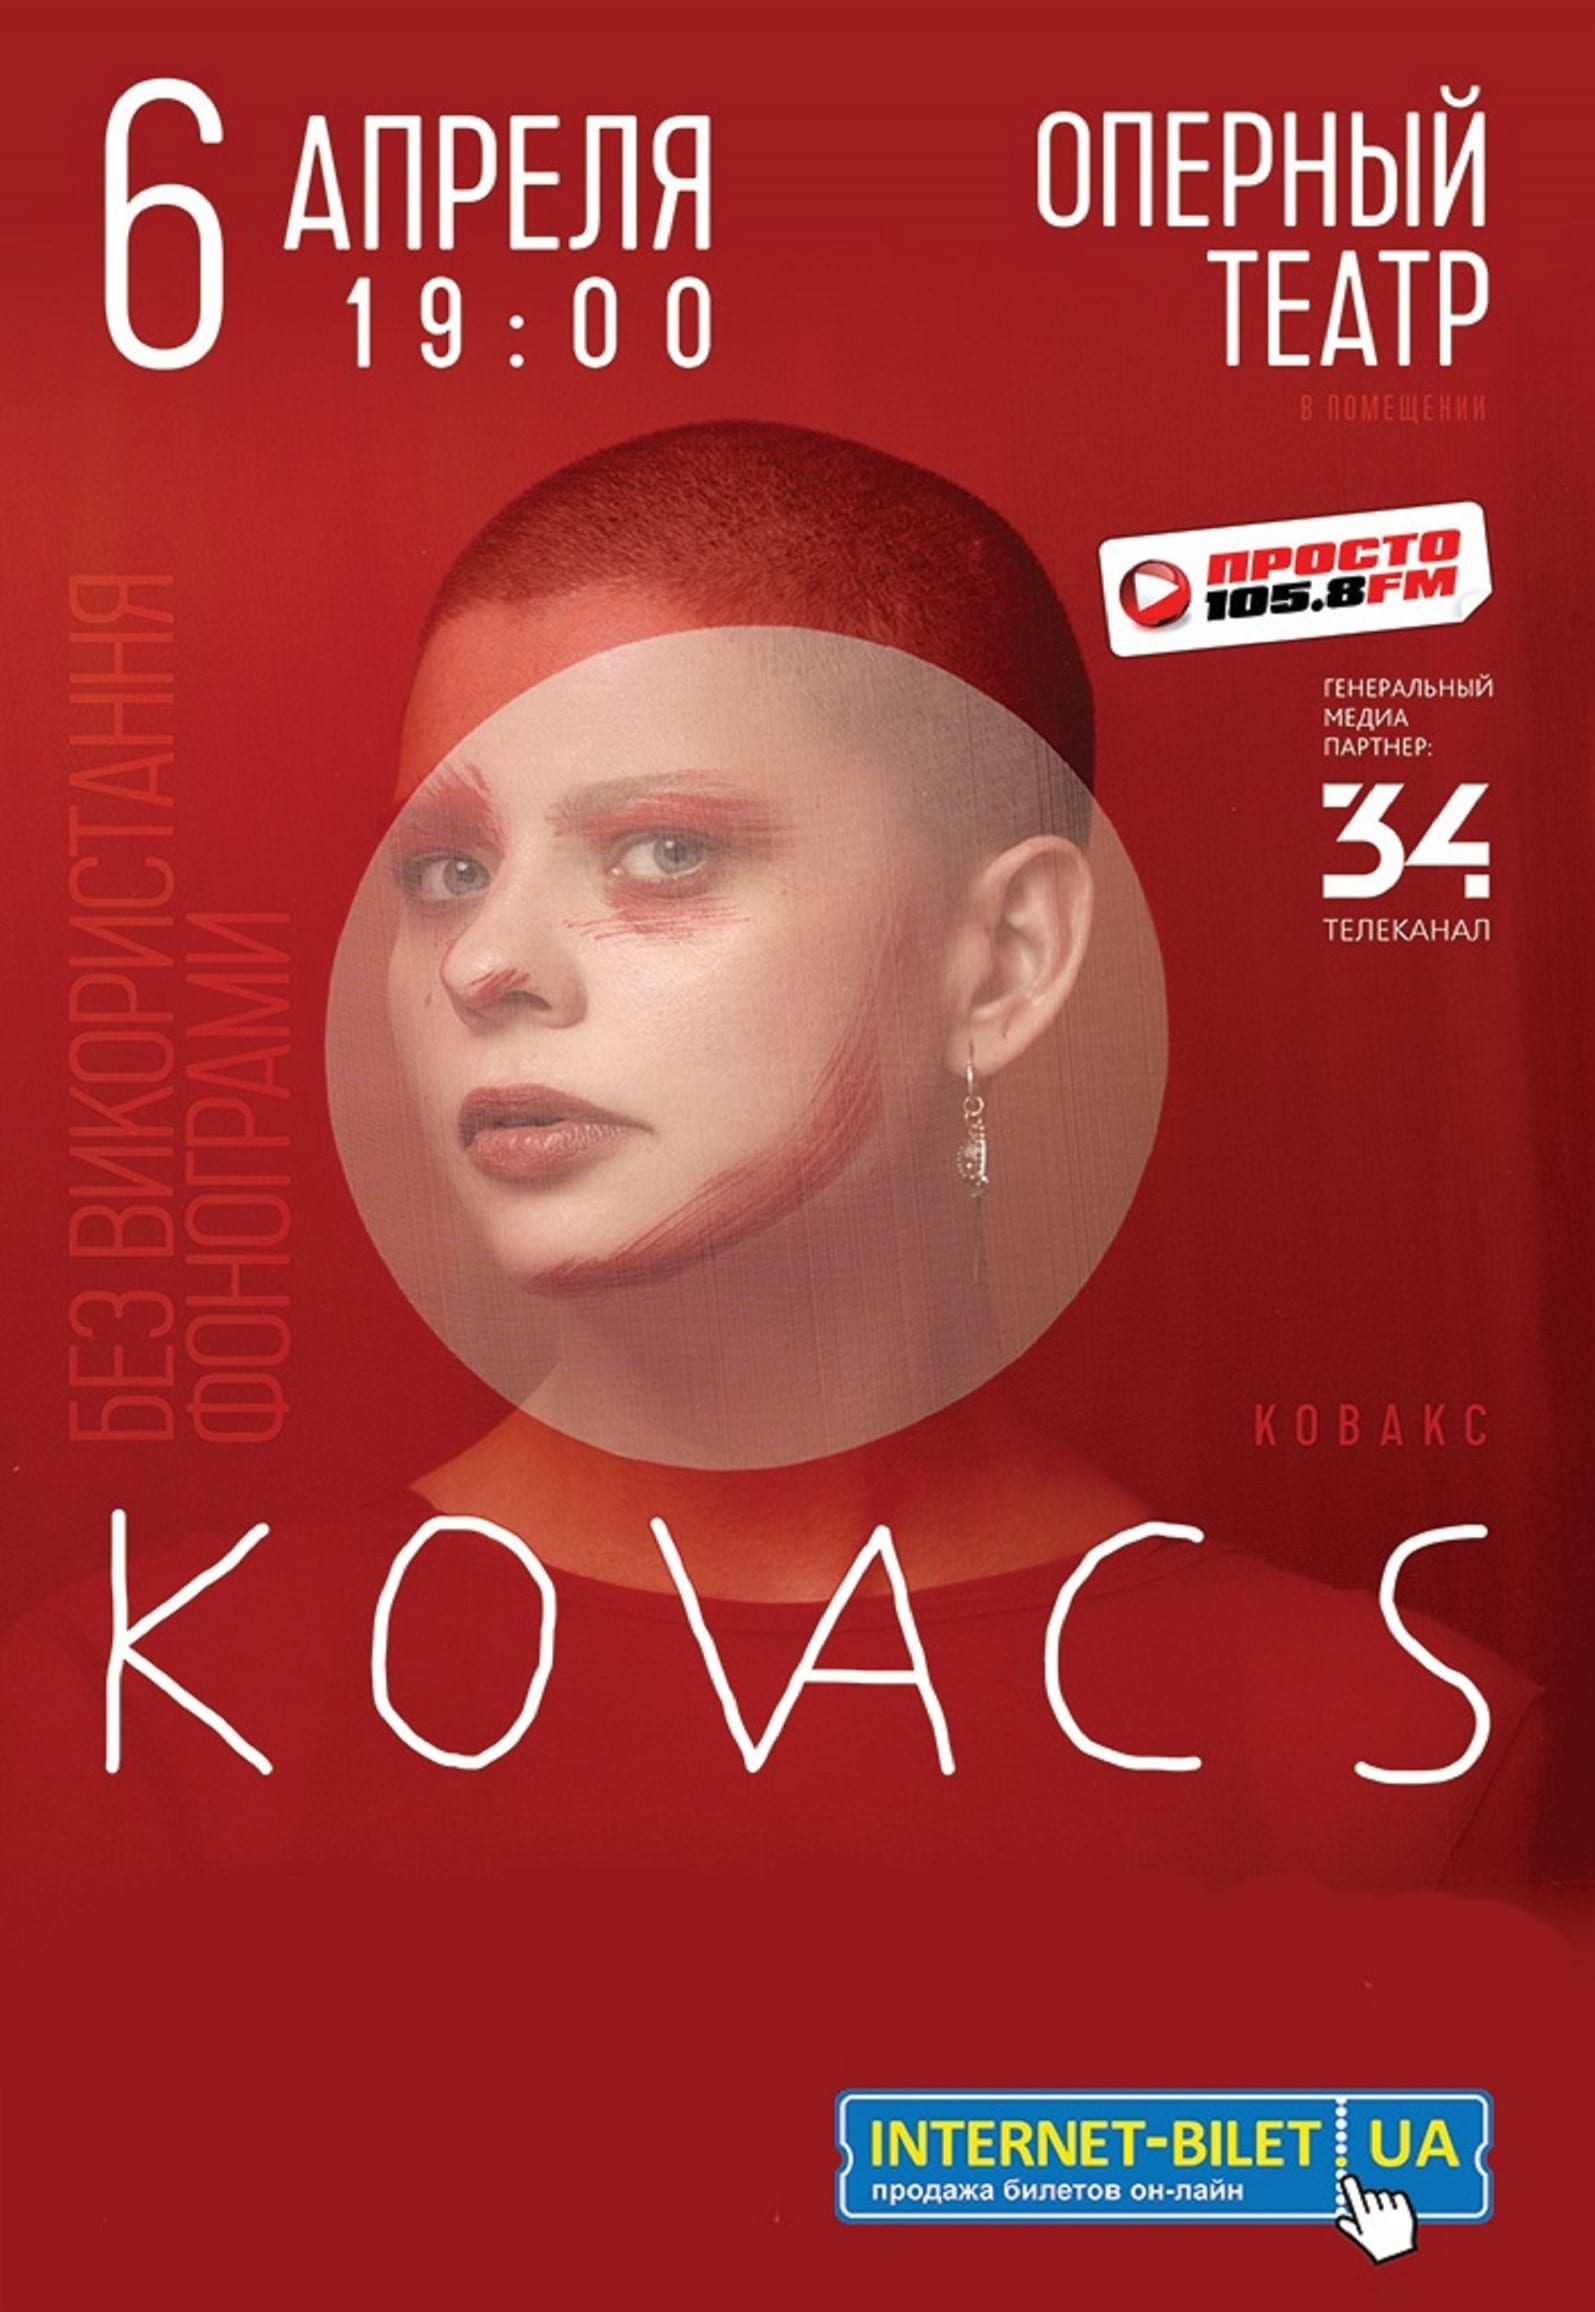 KOVACS 6.04.2019 Днепр, купить билеты. Афиша Днепра